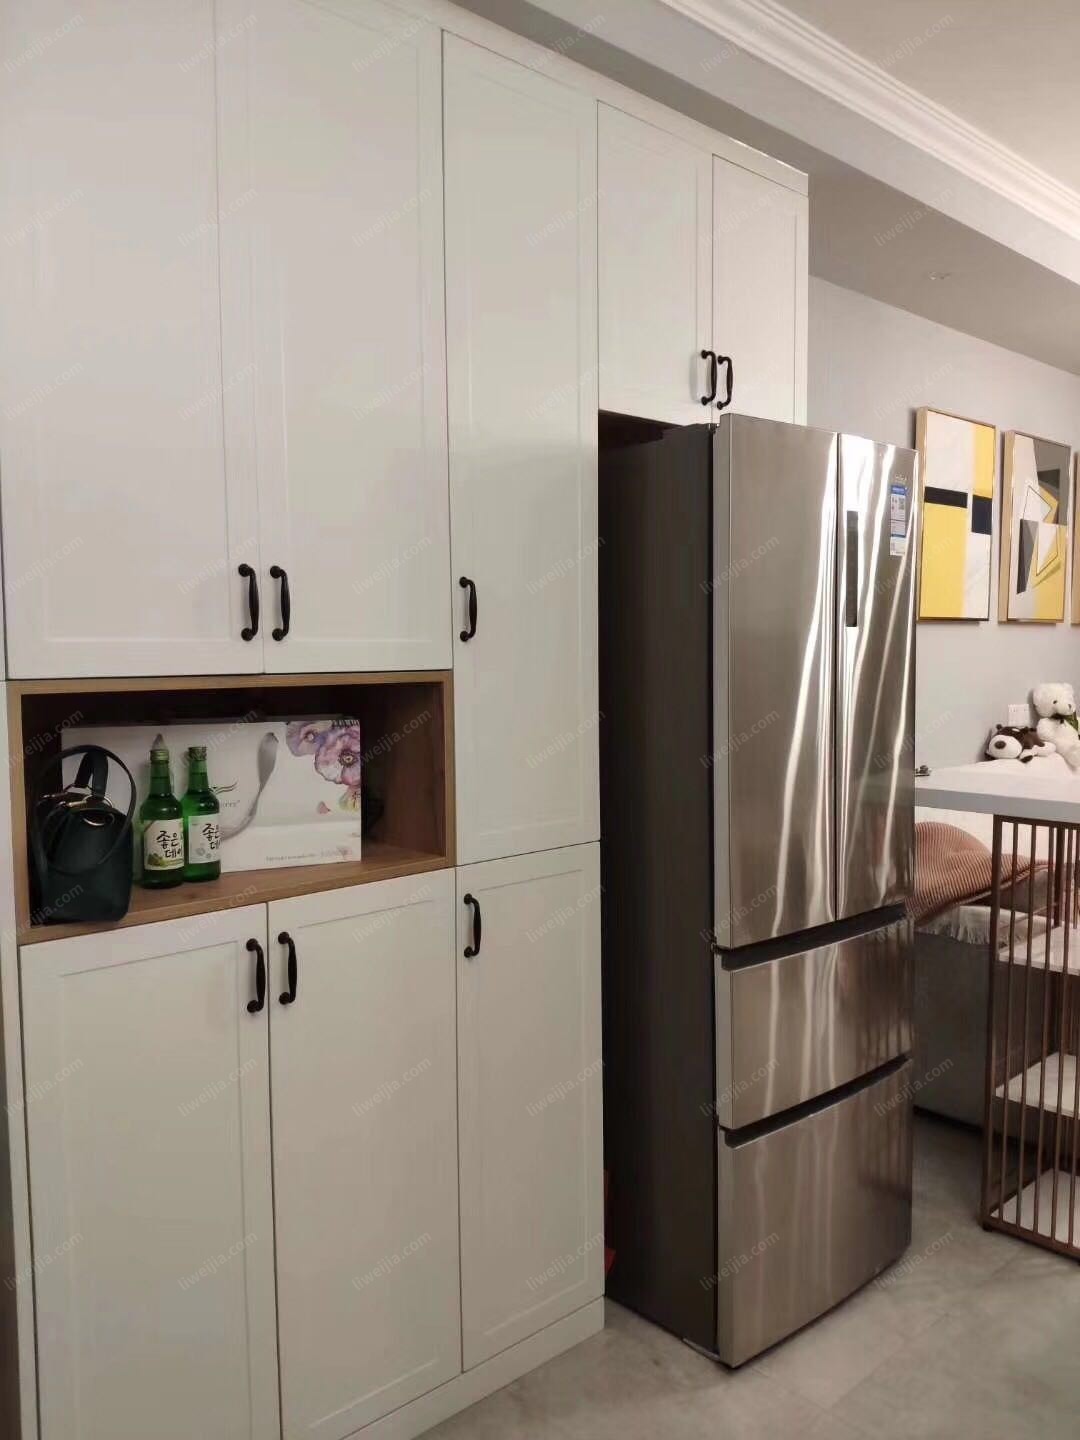 为了增加收纳功能，在客厅和厨房之间定制了一个展示柜，不但增加收纳的空间，而且看起来干净整洁。